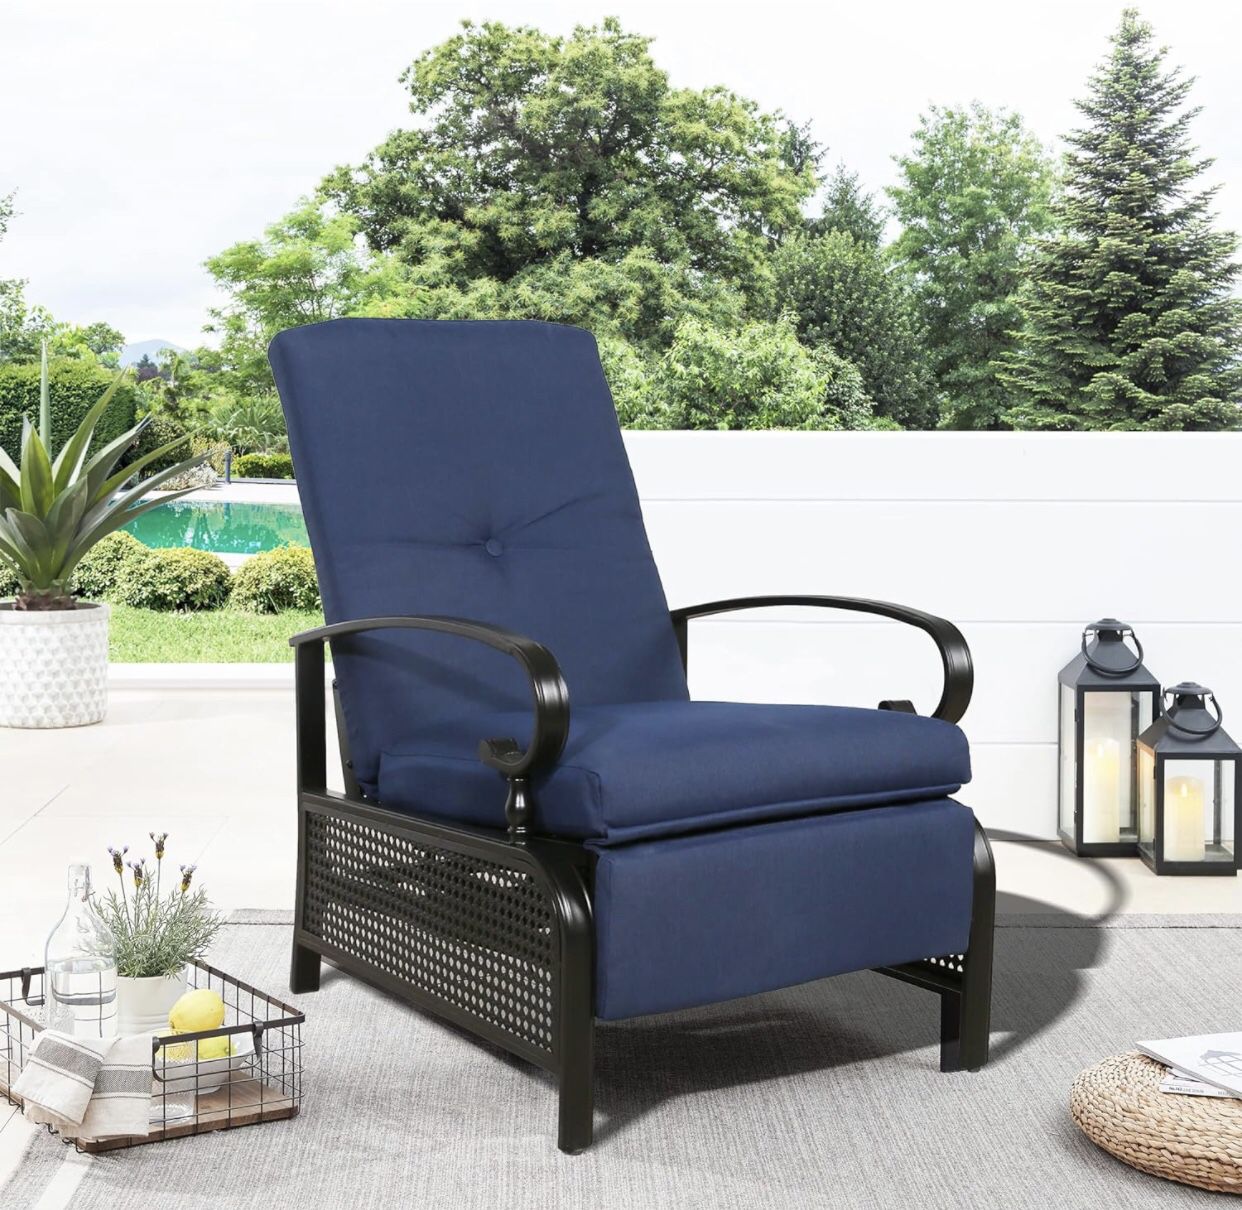 Silla reclinable ajustable para patio al aire libre, cómoda silla reclinable acolchada con fuerte marco de metal extensible para tomar el sol, leer y 